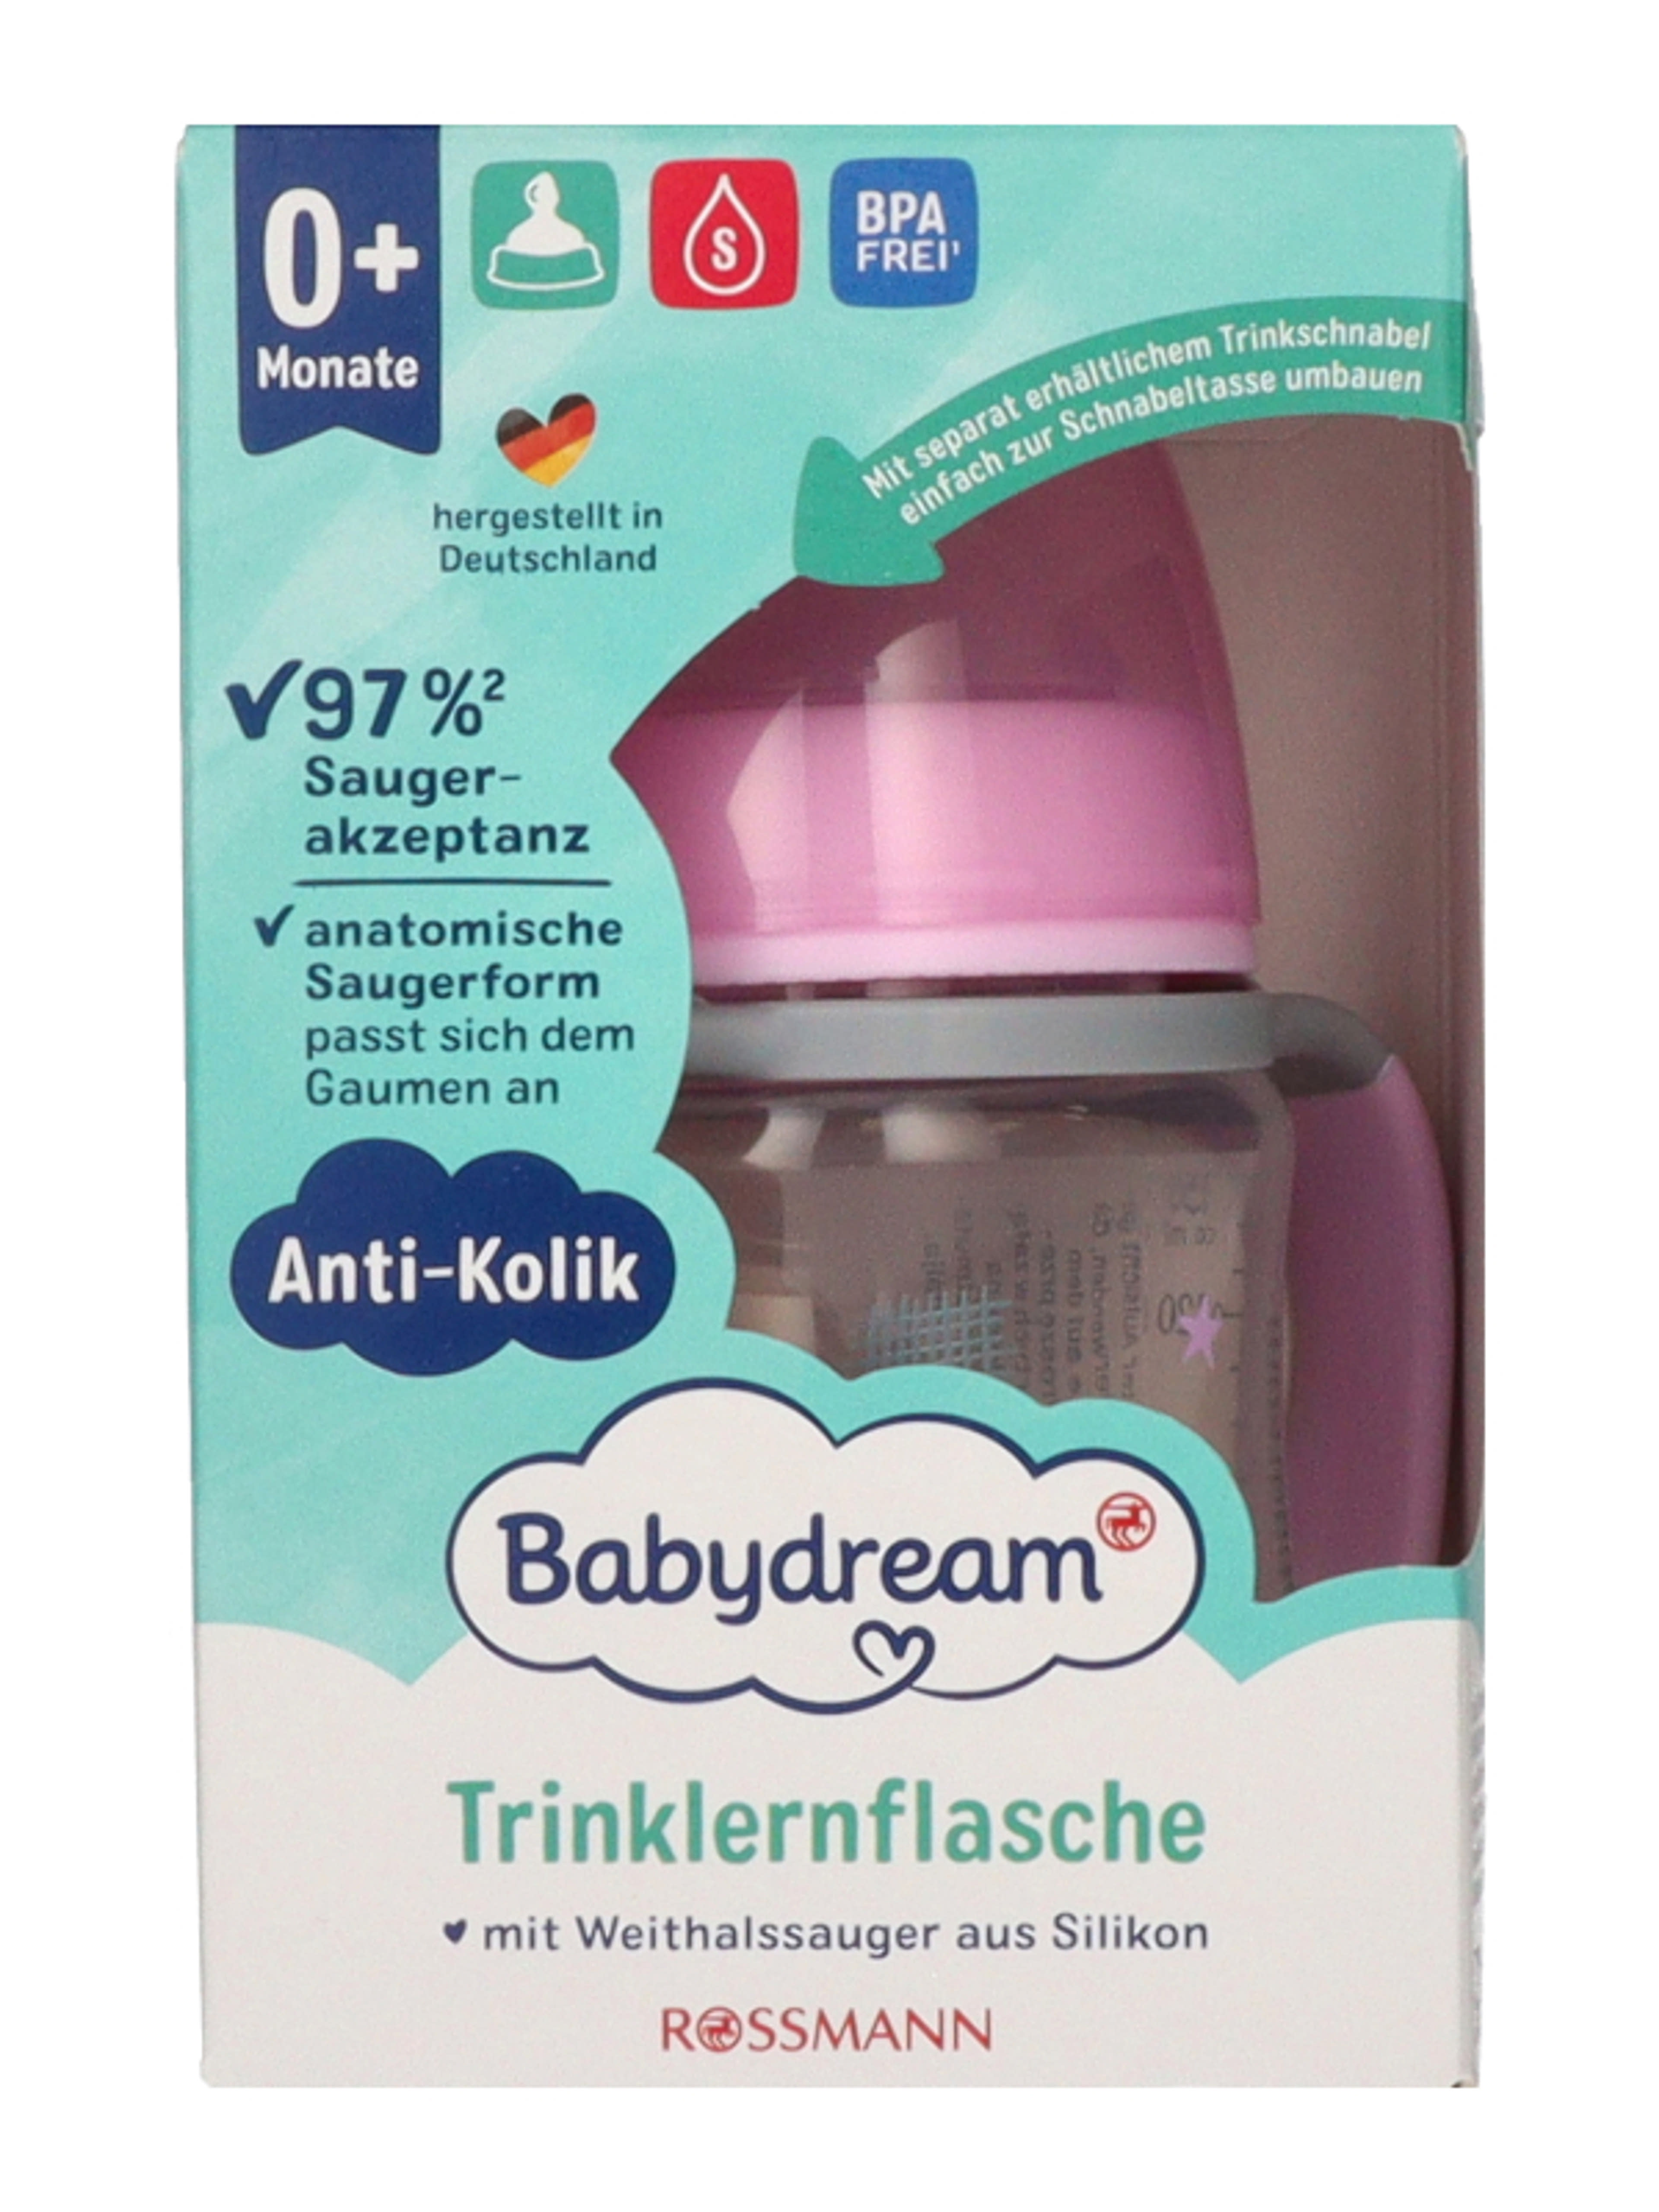 Babydream ivástanító pohár széles nyakú 0-6 hónapos korig 150 ml - 1 db